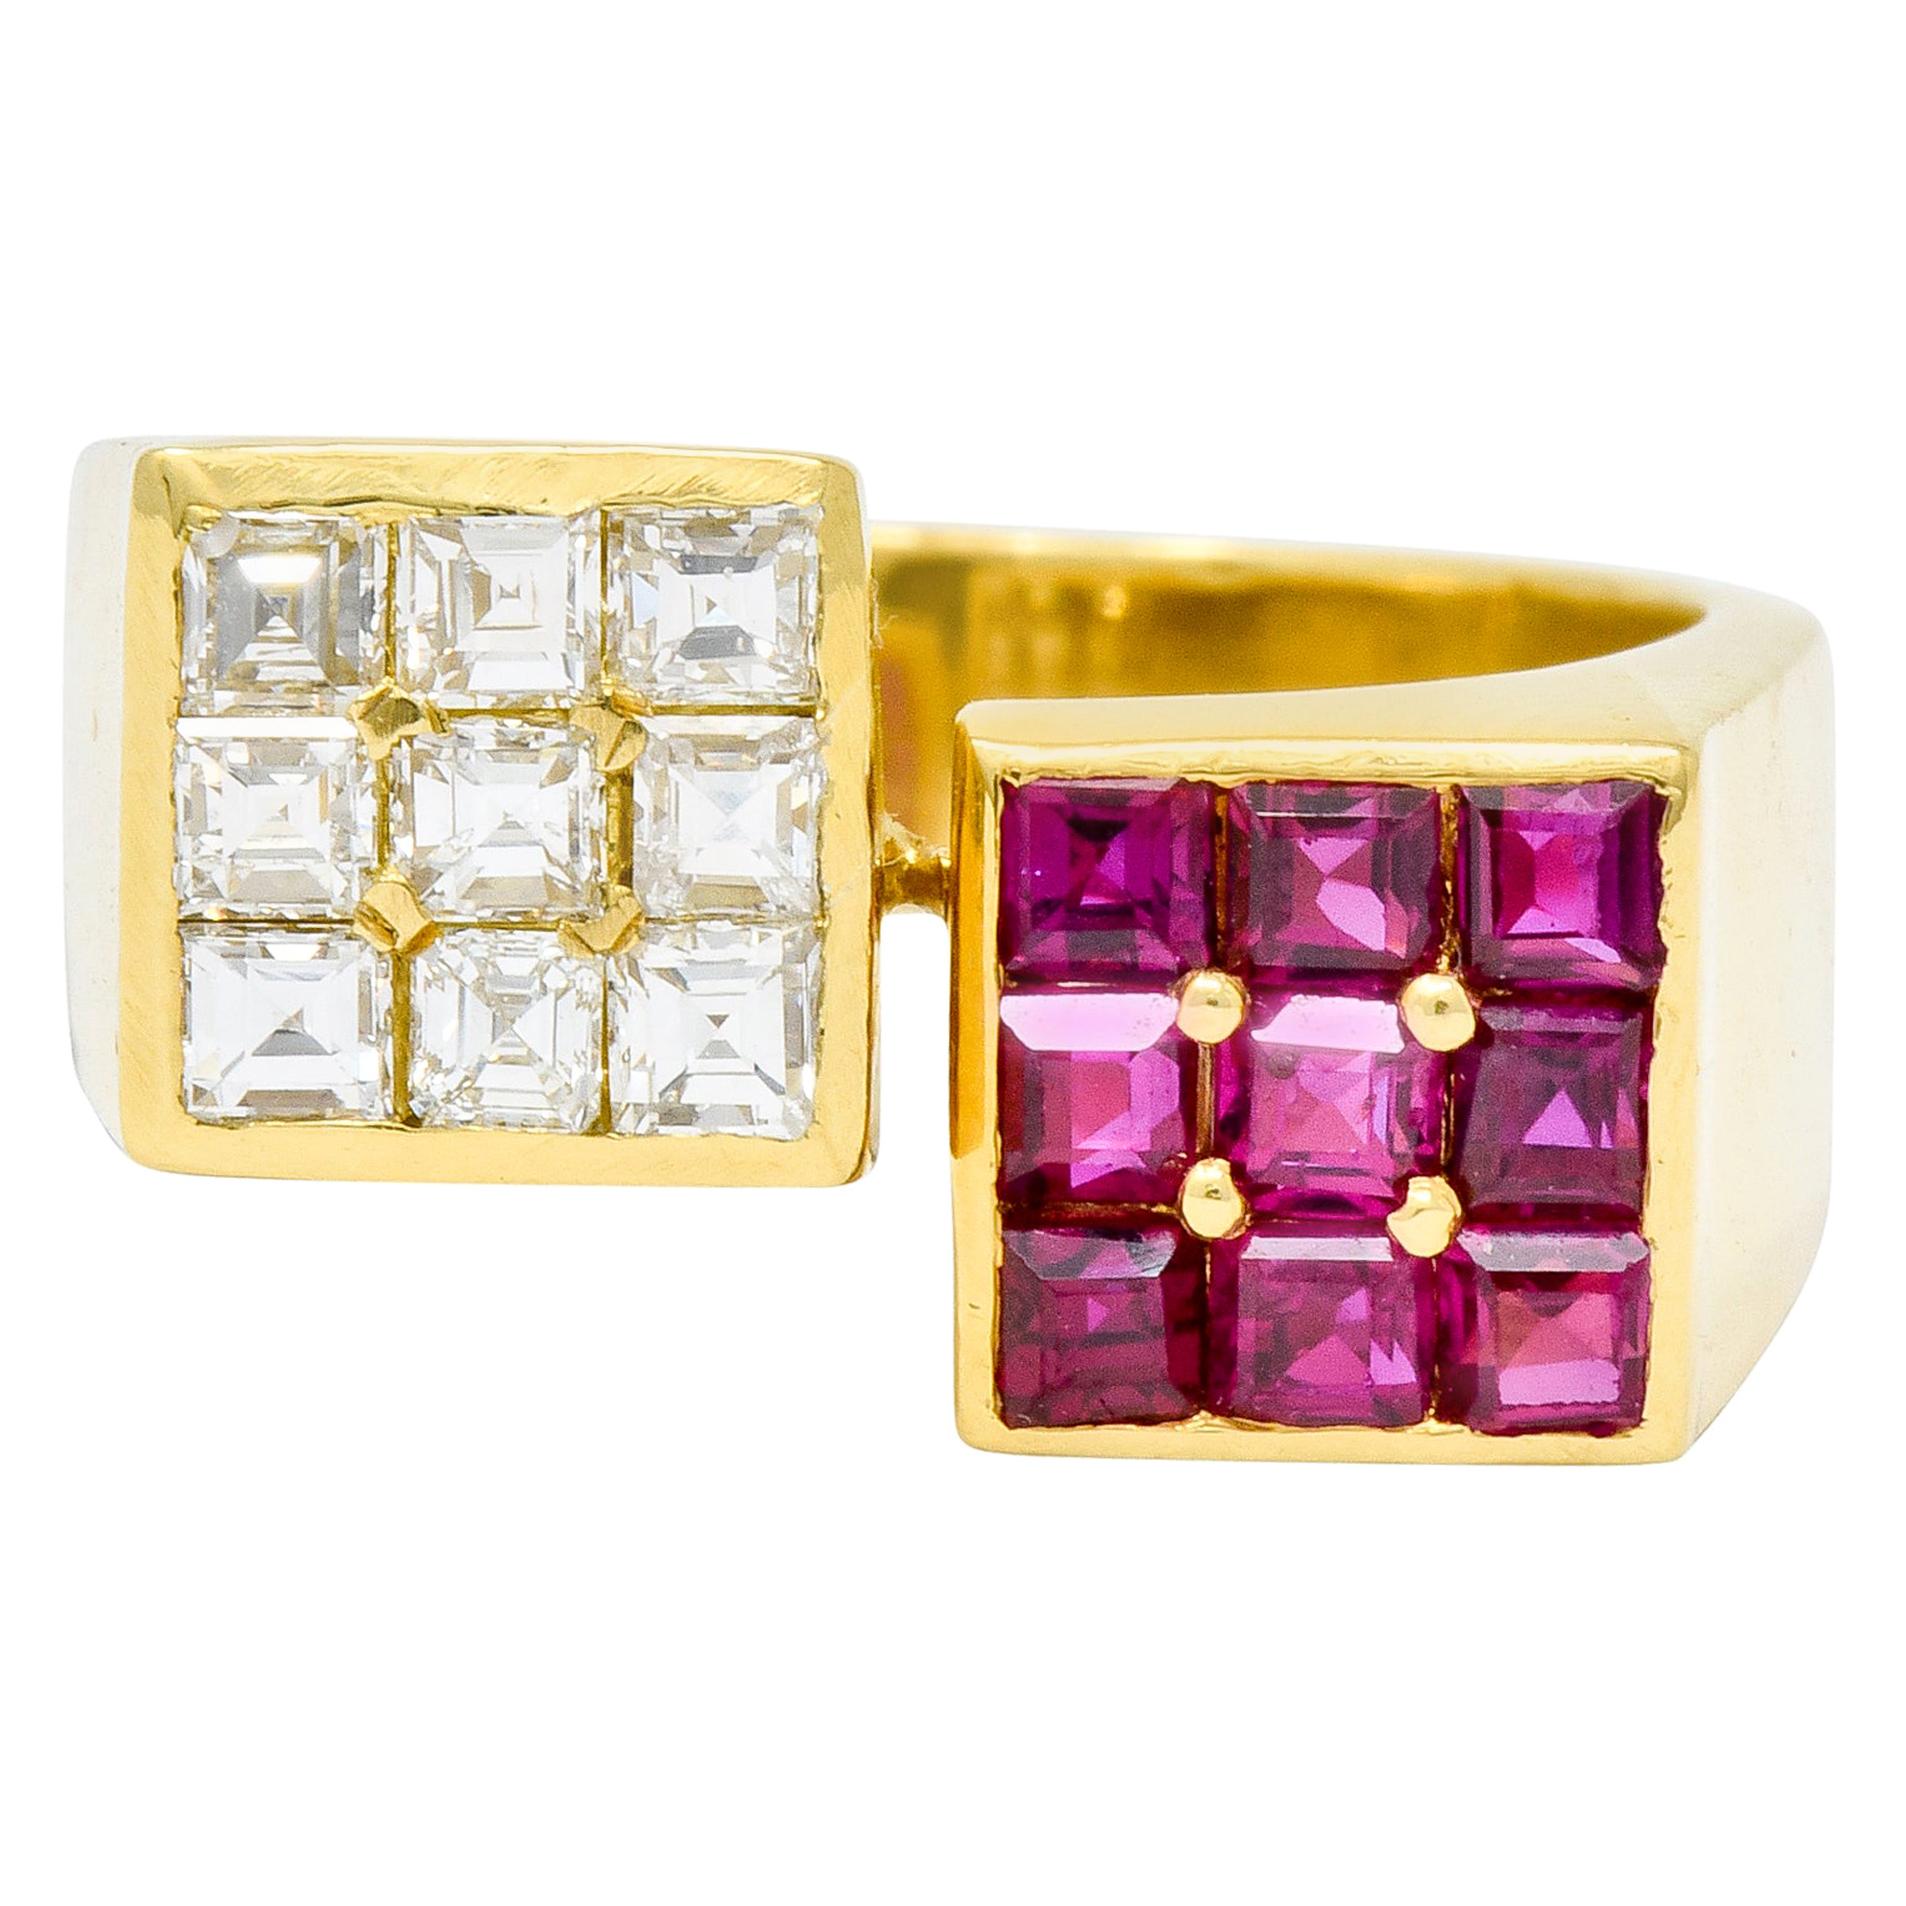 Vintage 1.80 Carat Ruby Diamond 18 Karat Gold Square Bypass Ring